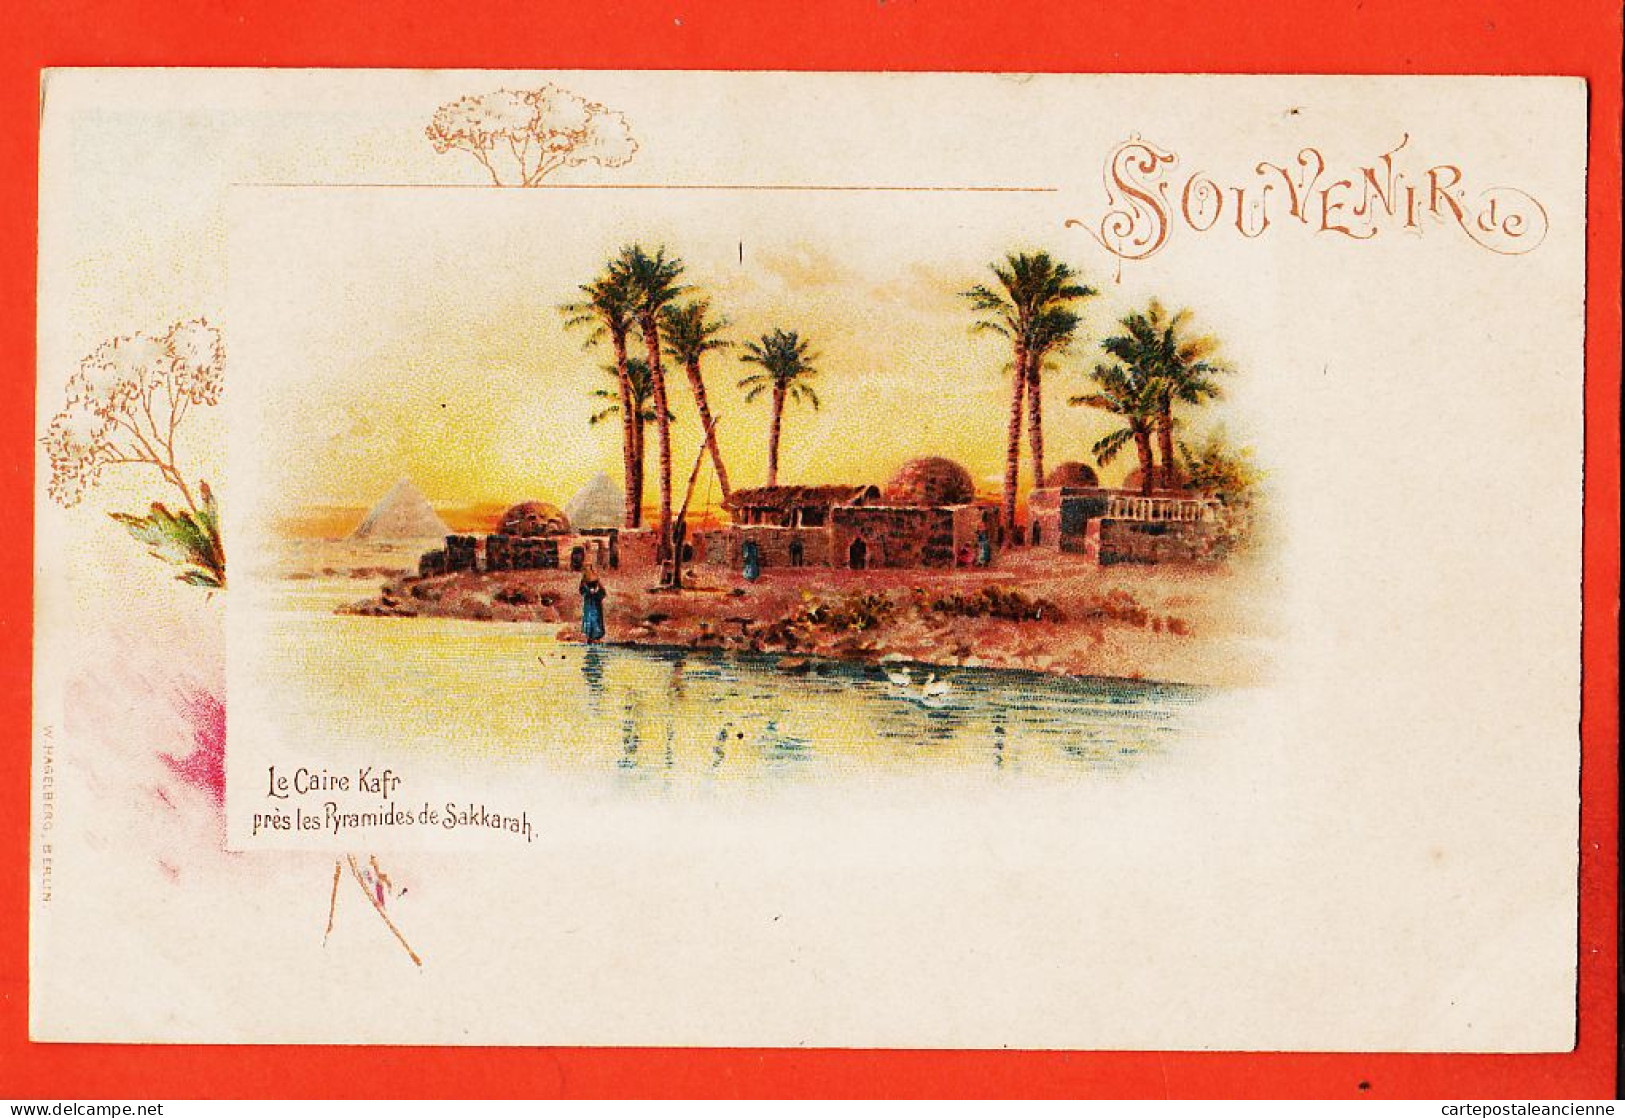 00549 / ⭐ Souvenir De LE CAIRE Egypte ◉ KAFR Près Pyramides SAKKARAH 1890s Egypt Lithographie HAGELBER AKT Ges. Berlin - Cairo